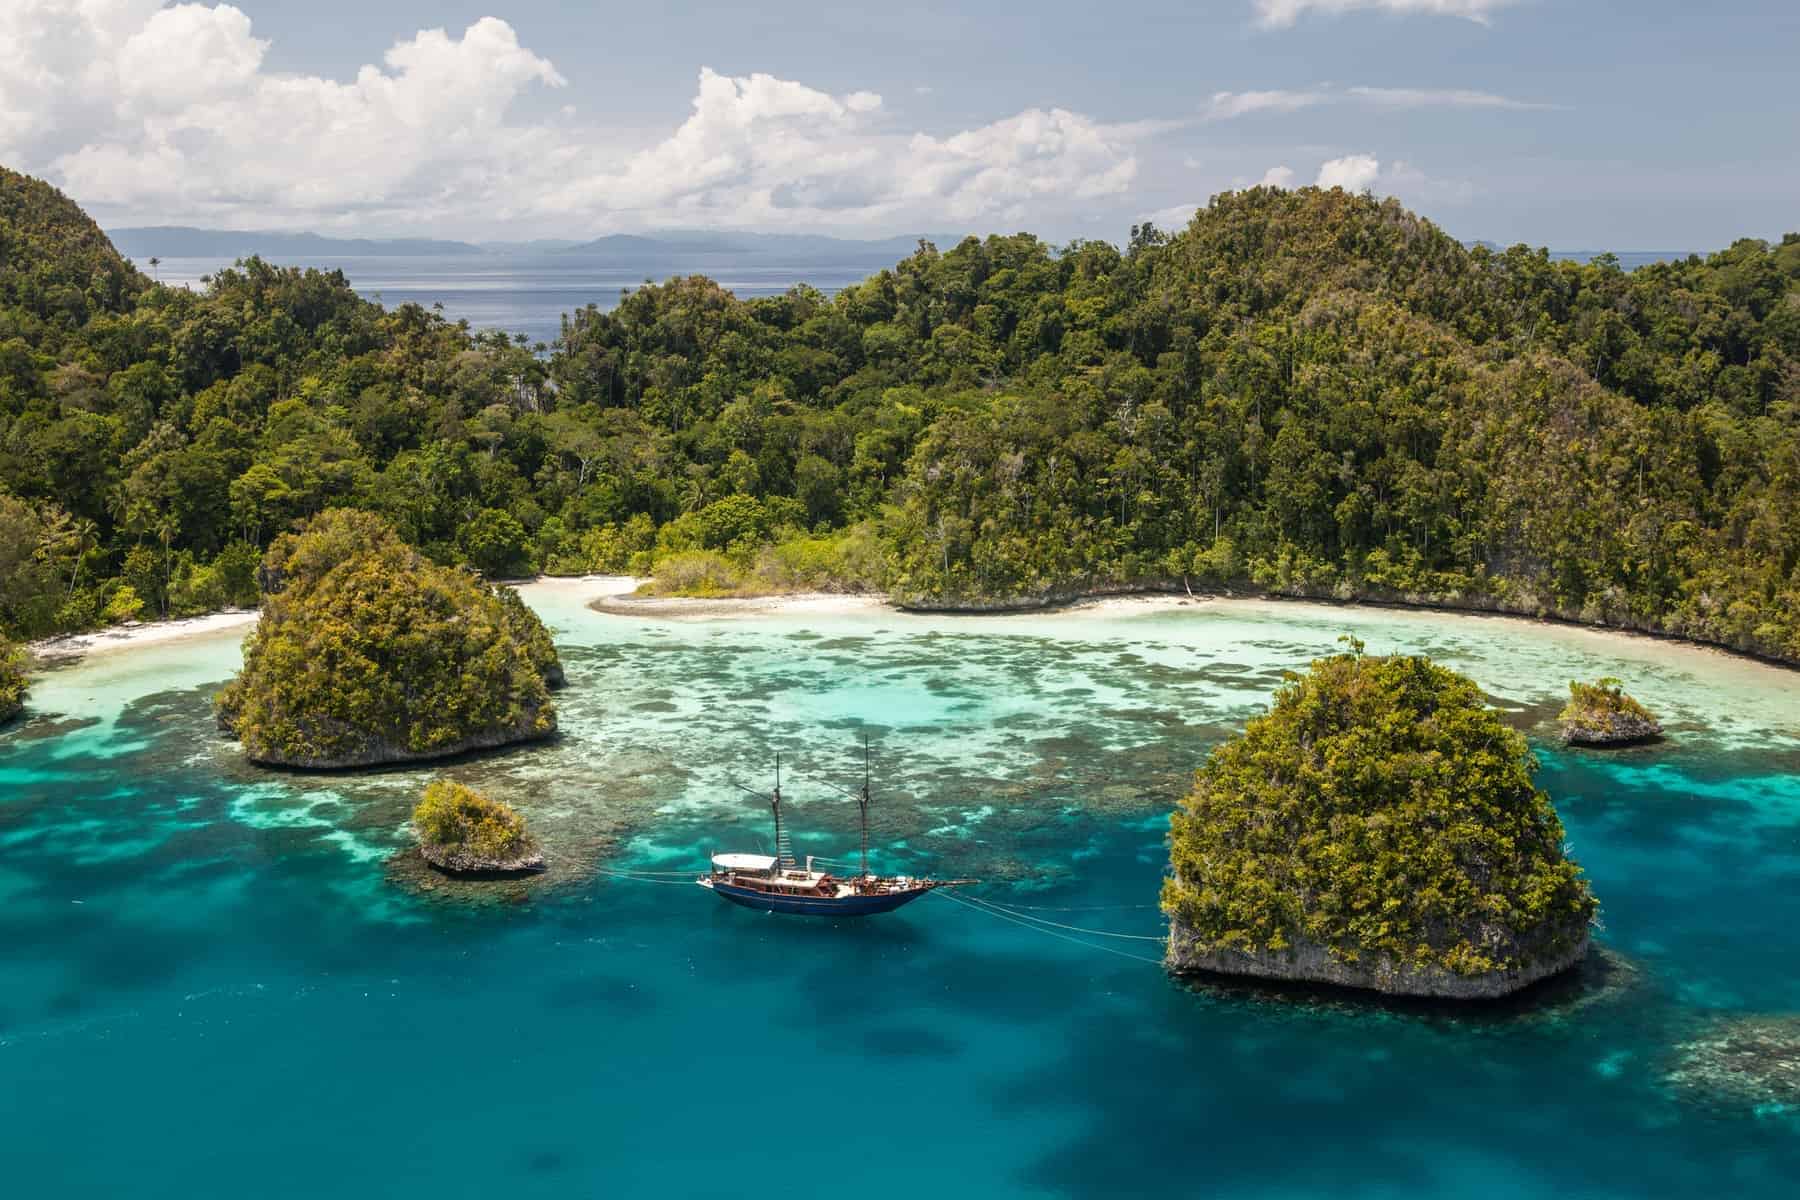 Verdens største øer - Papua New Guinea, Raja Ampat omgivet af kalkholdige klipper i havet